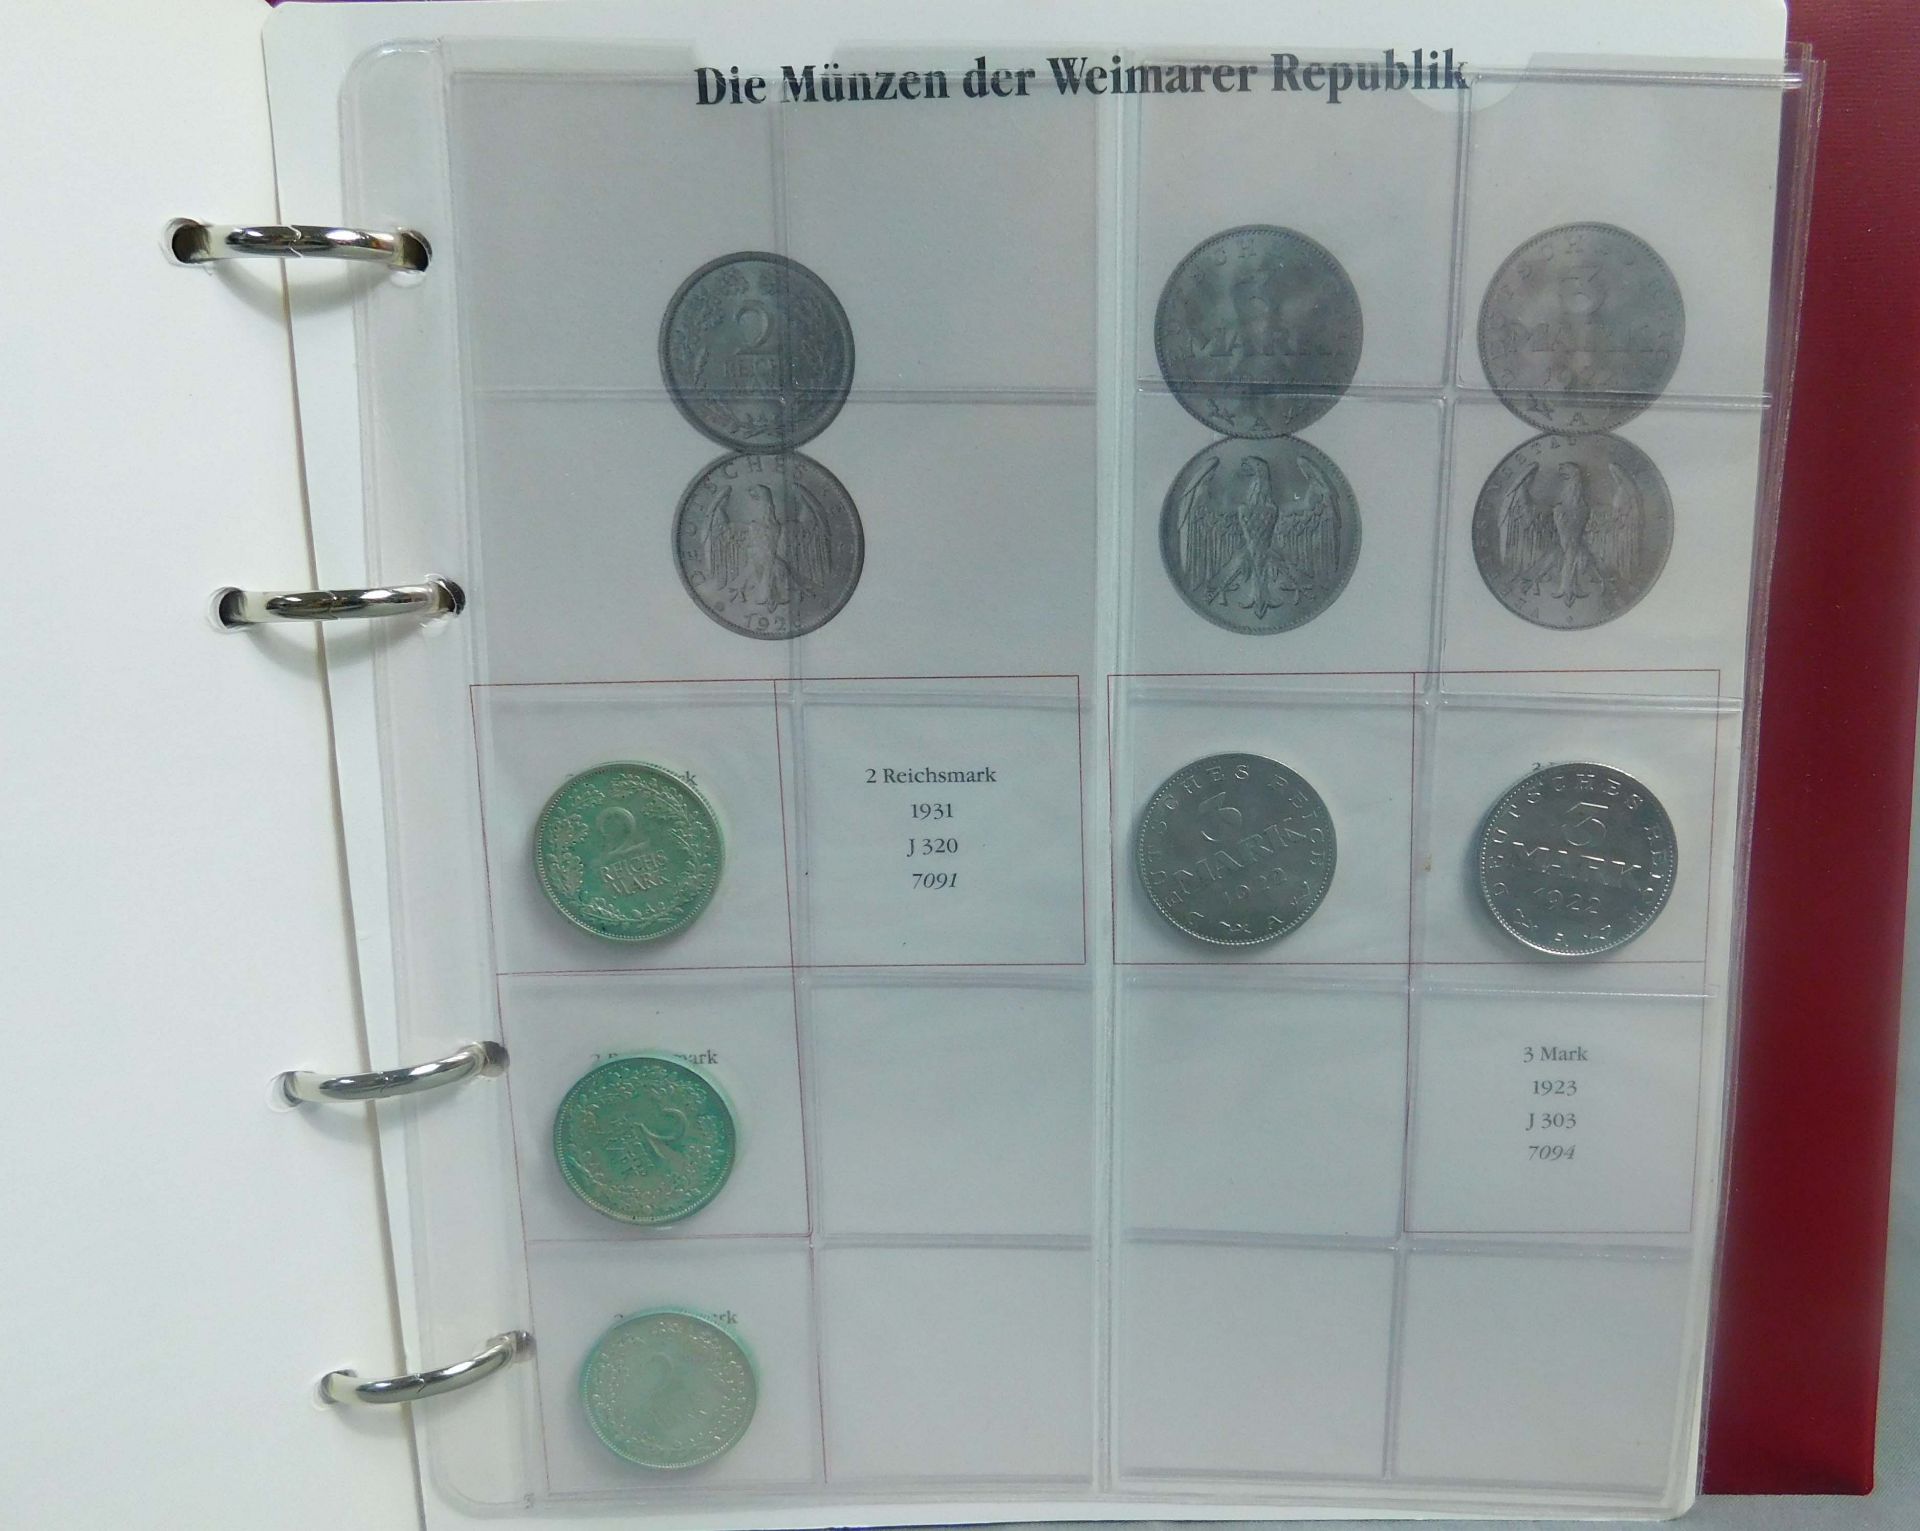 Münzalbum. Mit diversen kleinen Münzen. Weimarer Republik. - Bild 9 aus 16